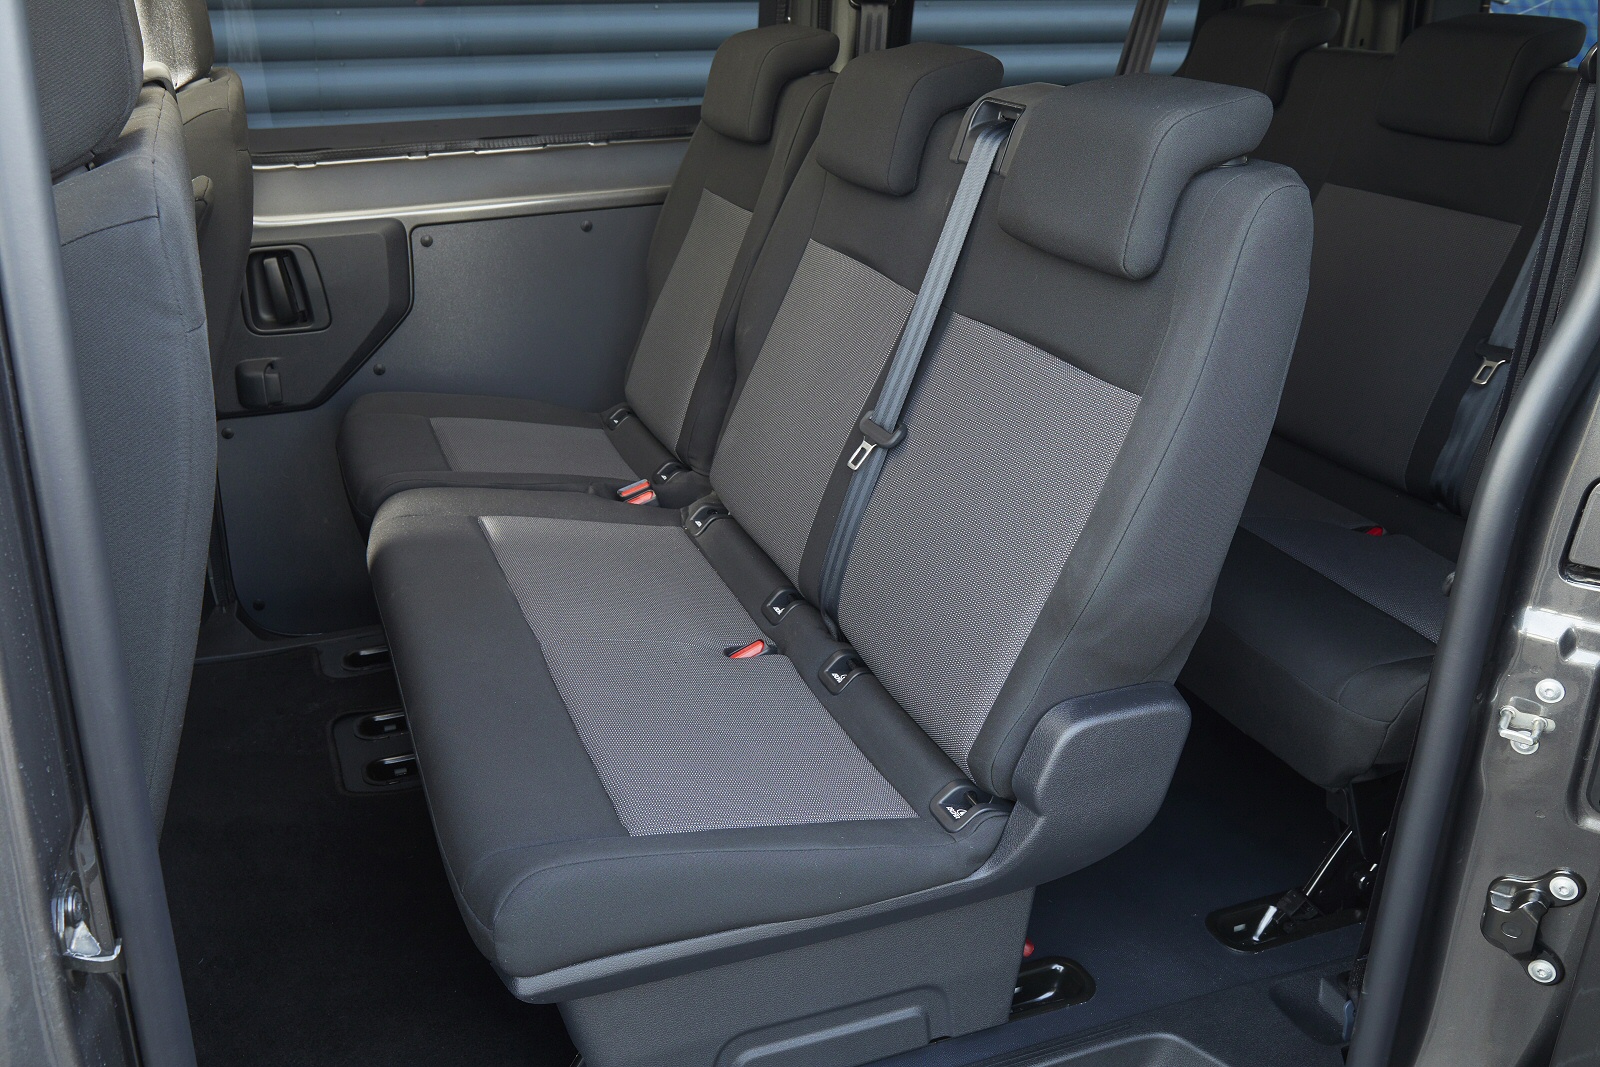 CITROEN E-SPACE TOURER ELECTRIC ESTATE 100kW Business Edition XL [8 Seat] 50kWh 5dr Auto